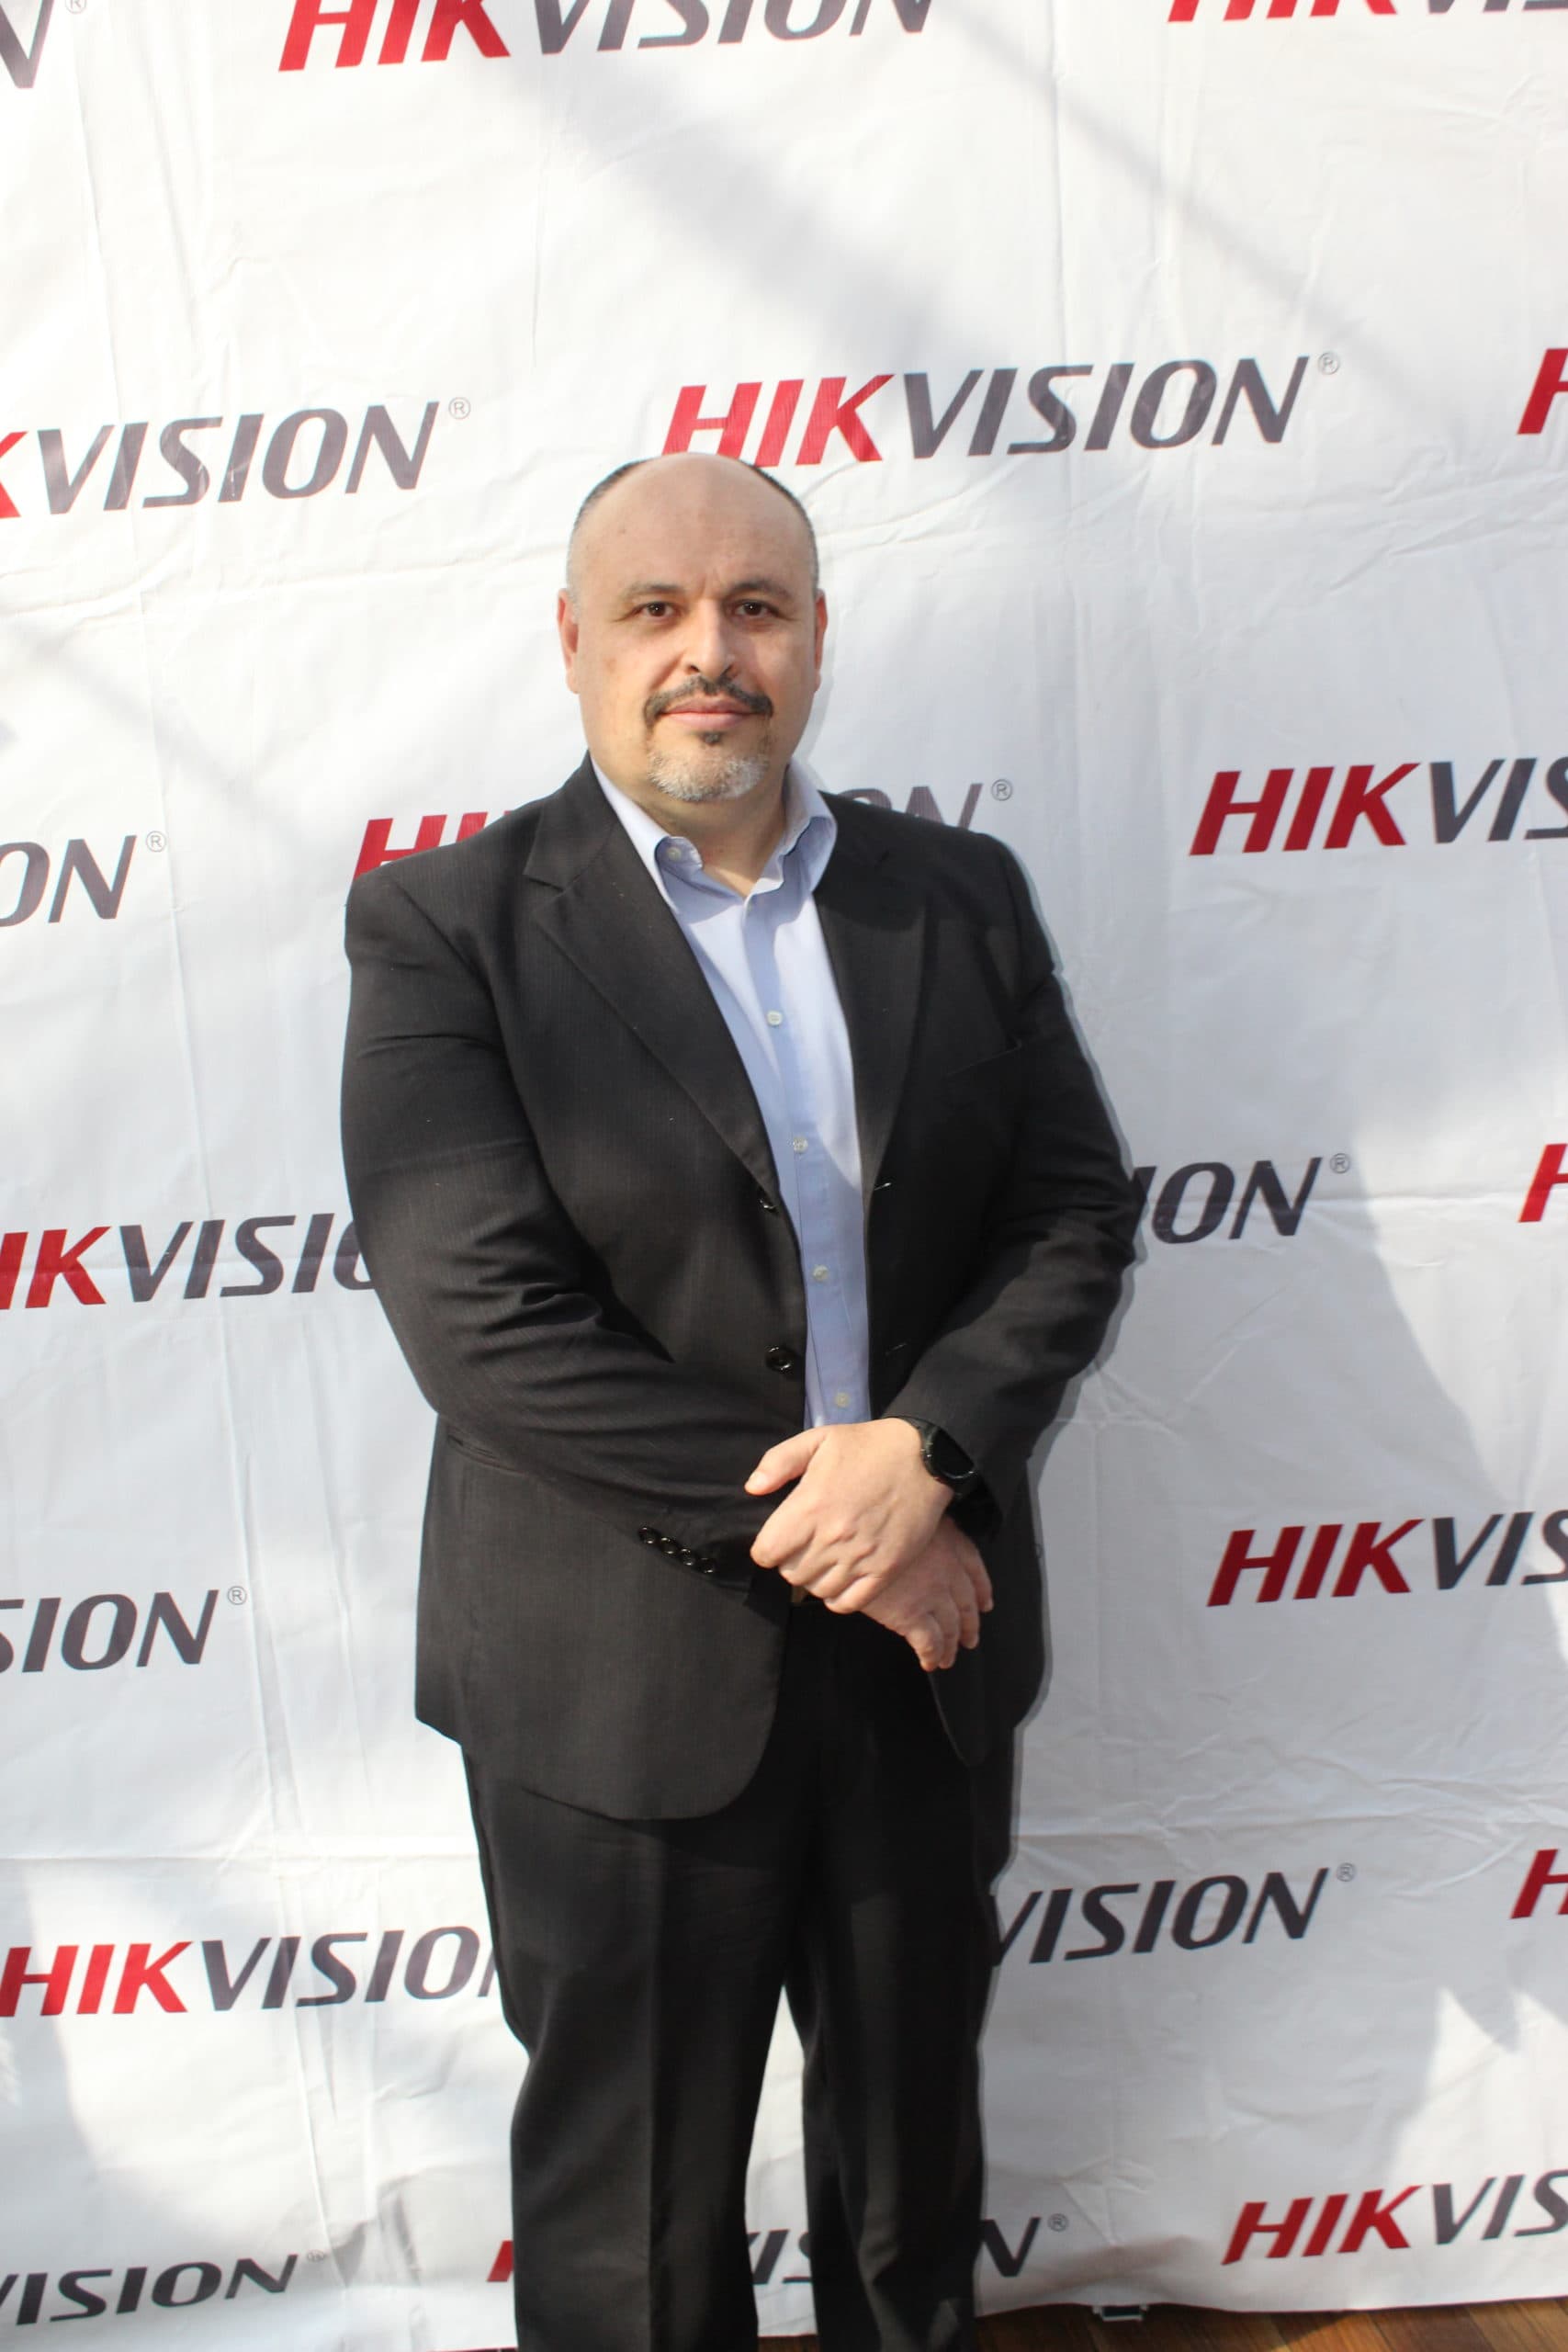 De la seguridad a pantallas comerciales: Hikvision amplía modelo de negocio